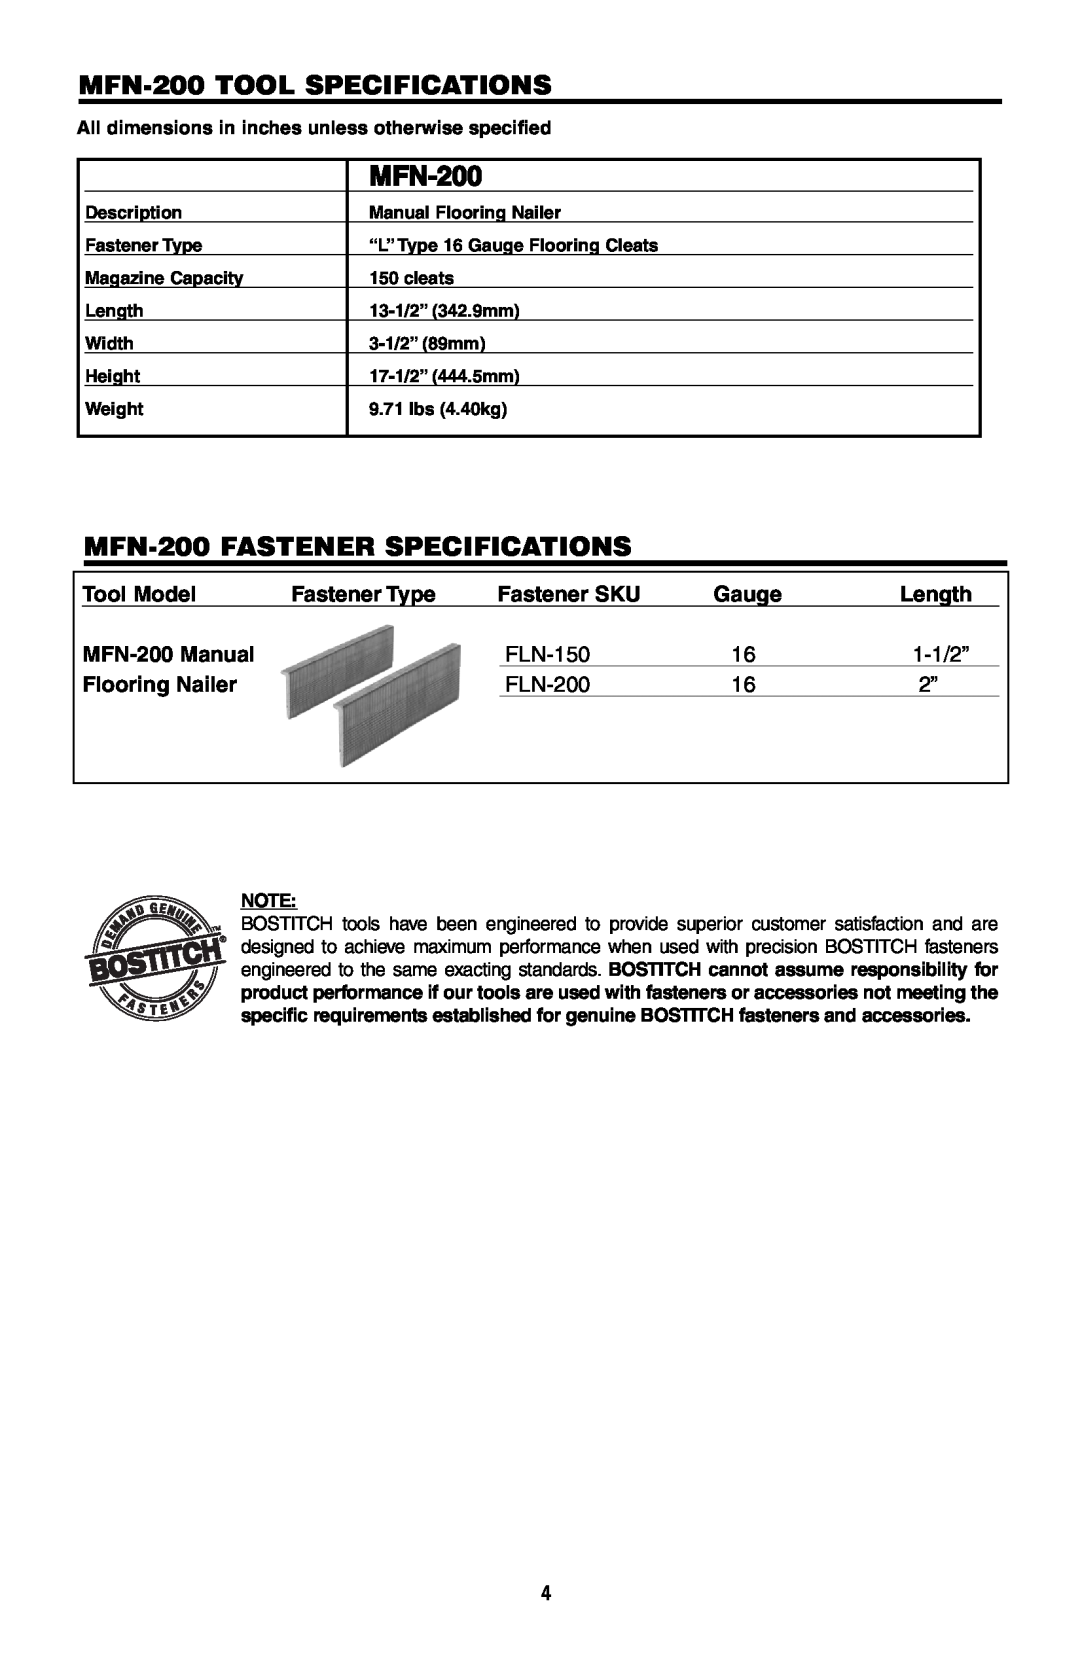 Intec MFN-200 TOOL SPECIFICATIONS, MFN-200 FASTENER SPECIFICATIONS, Tool Model, Fastener Type, Fastener SKU, FLN-150 